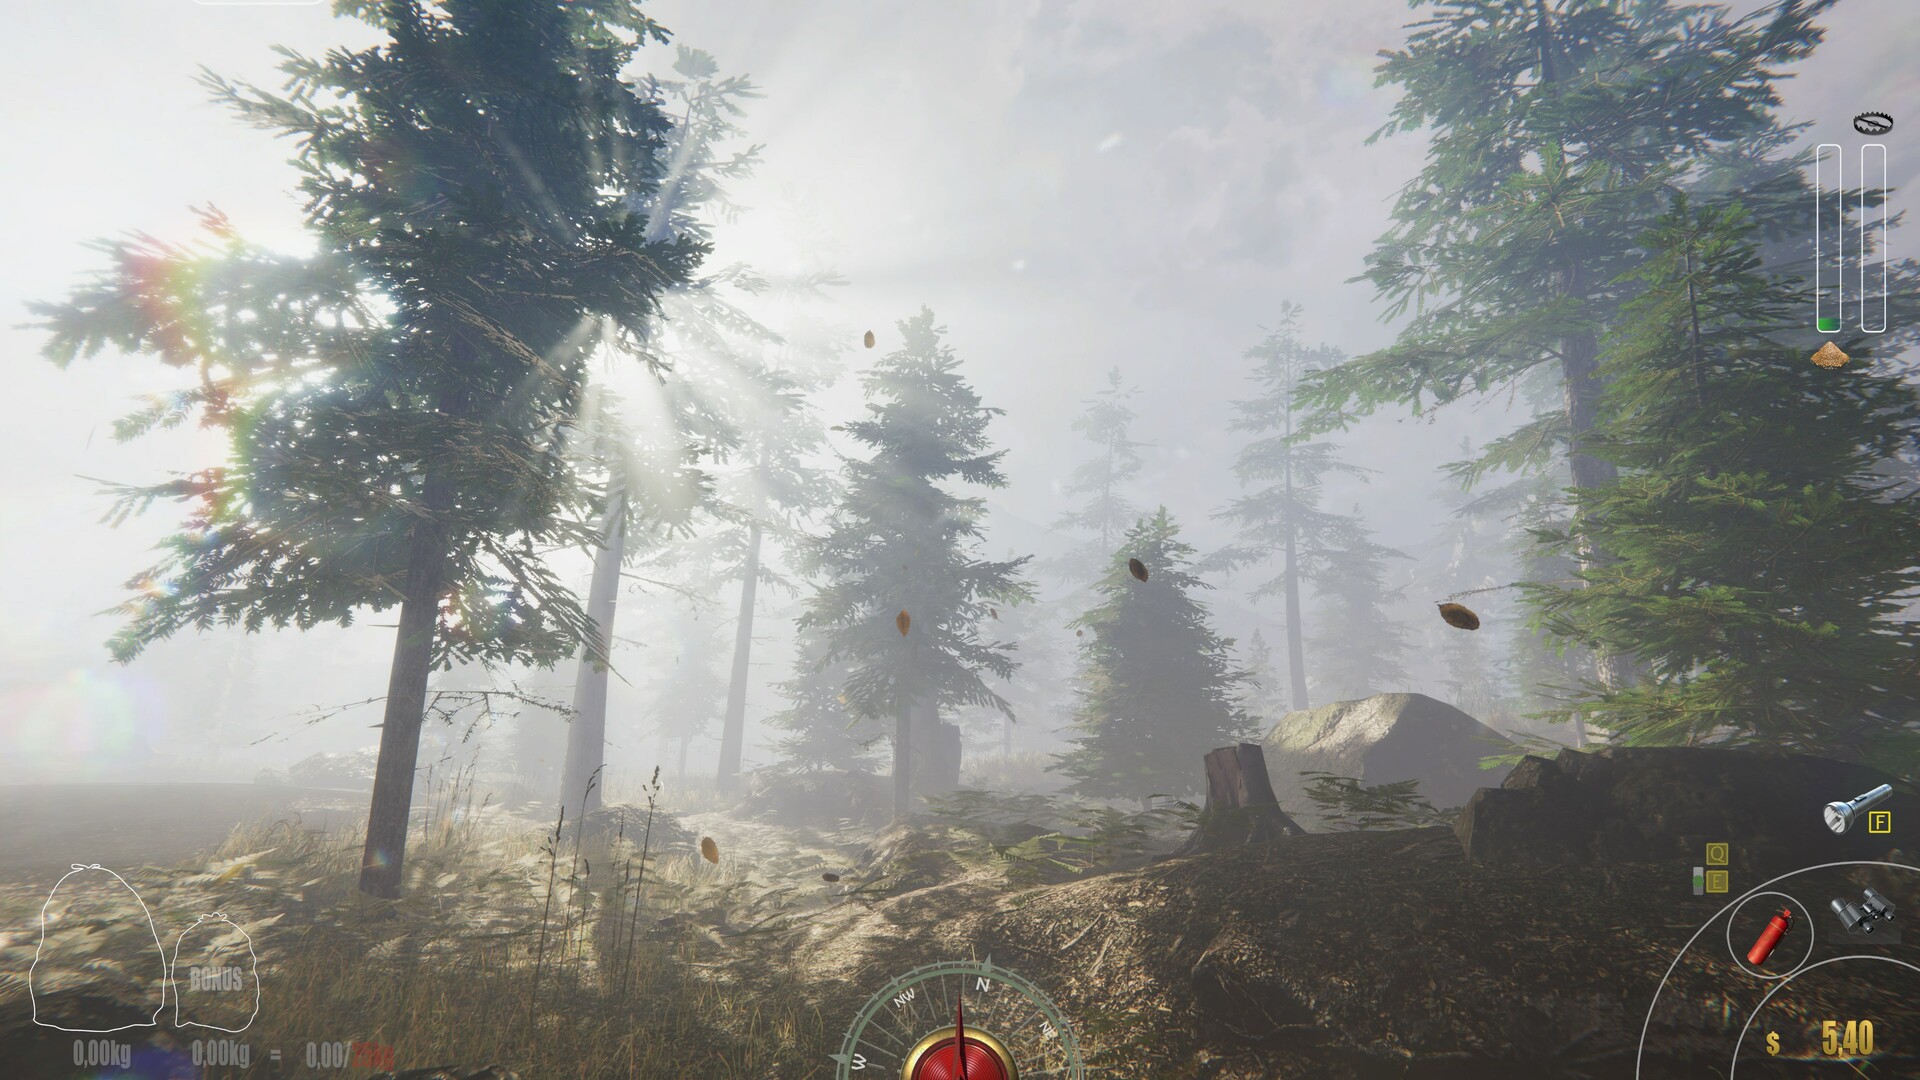 模拟经营游戏《森林管理员模拟器》试玩Demo现已上线